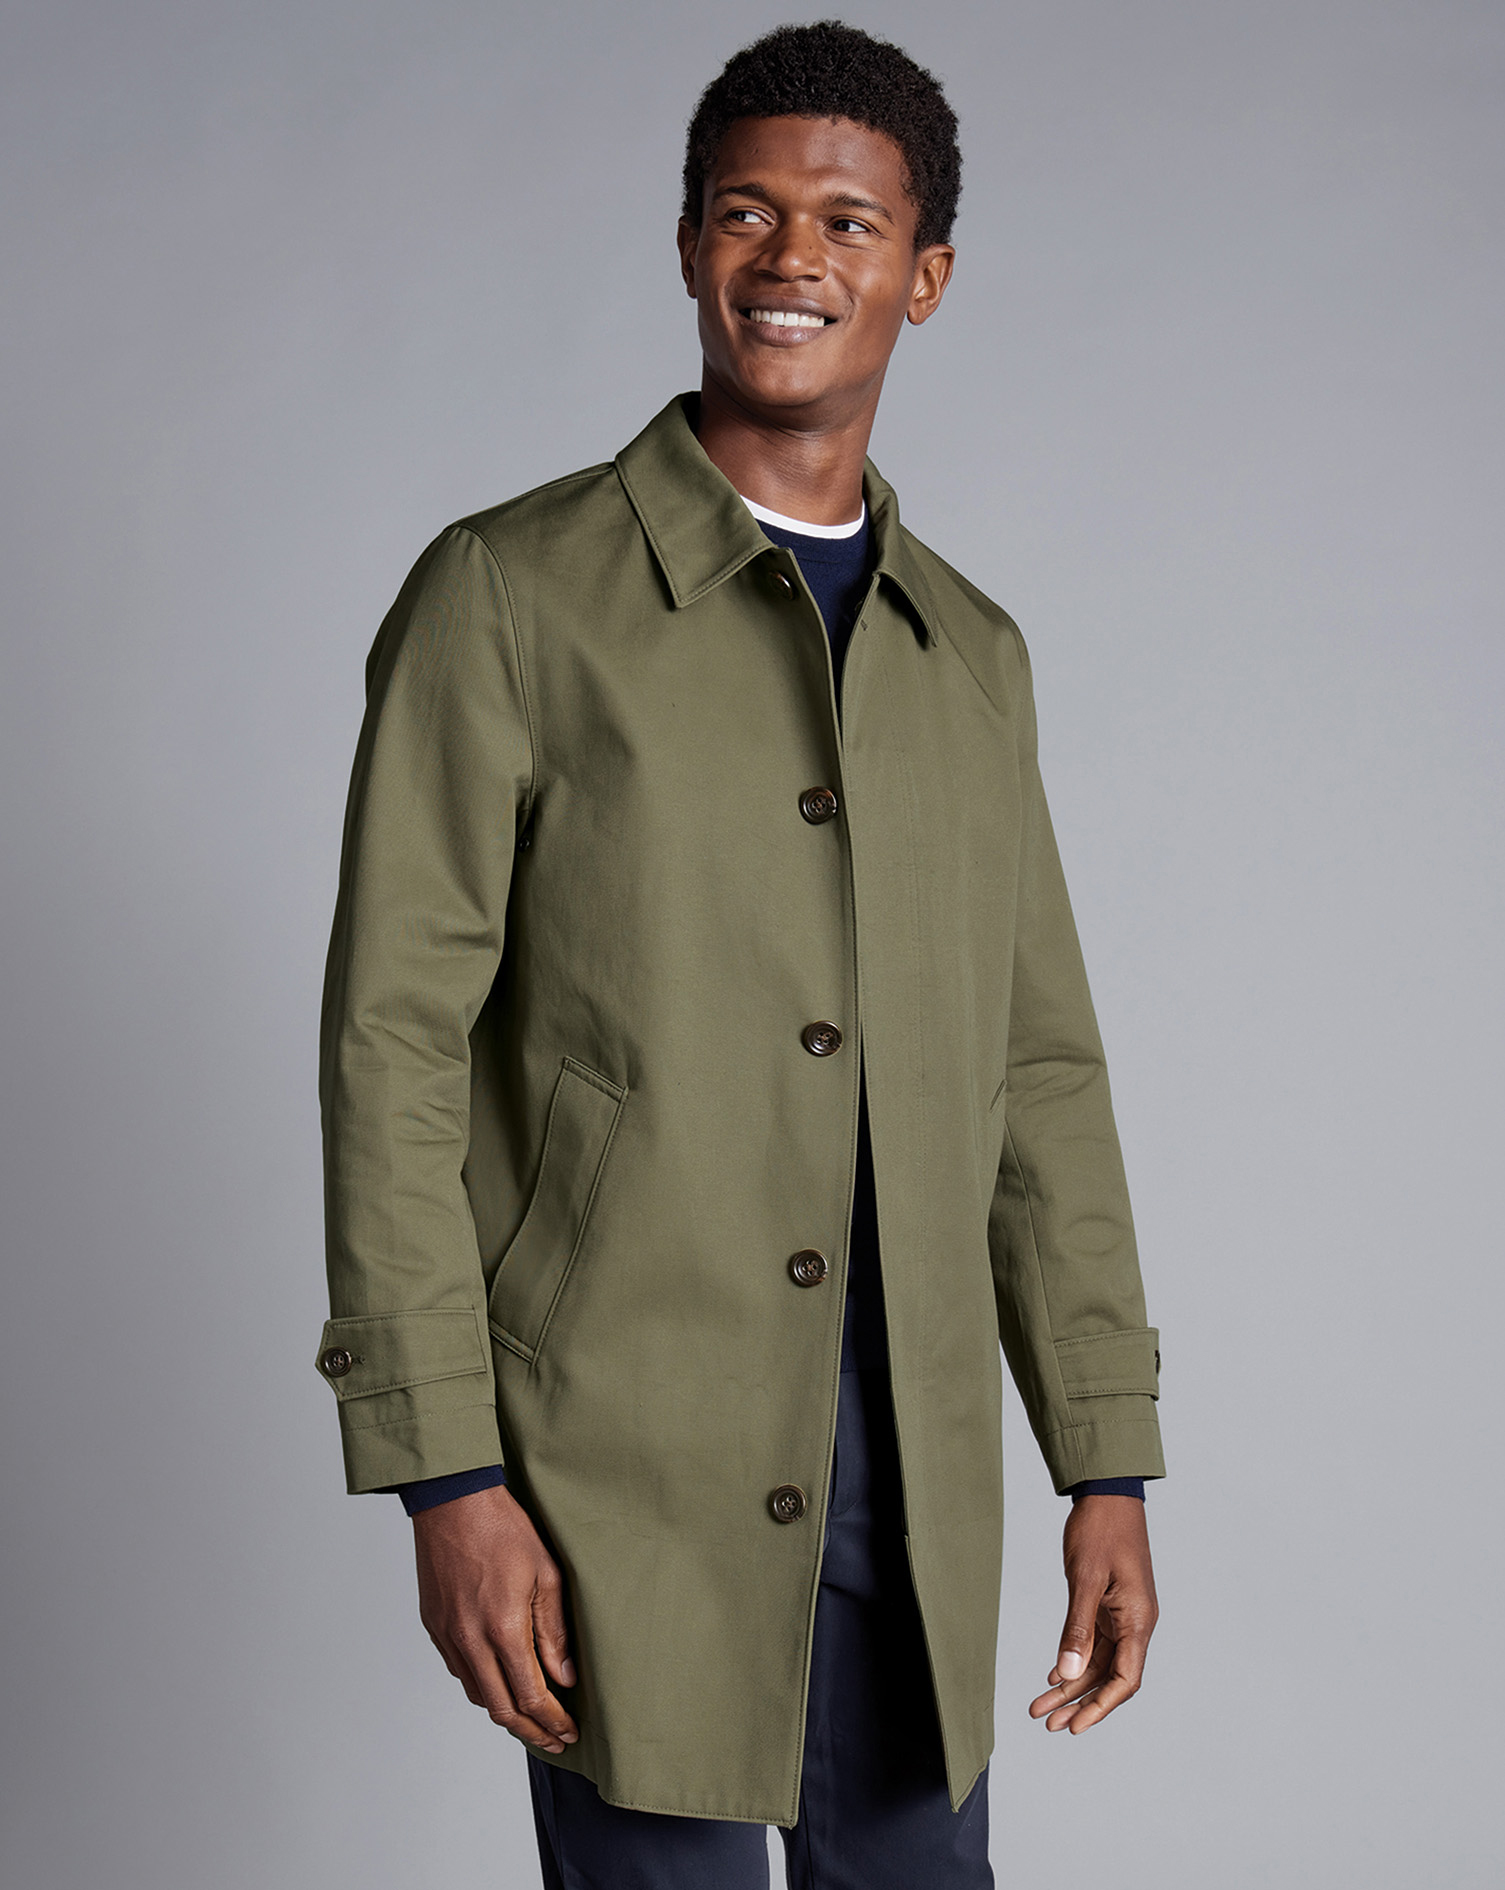 Men's Charles Tyrwhitt Showerproof Rain coat - Olive Green Size 44R Cotton
